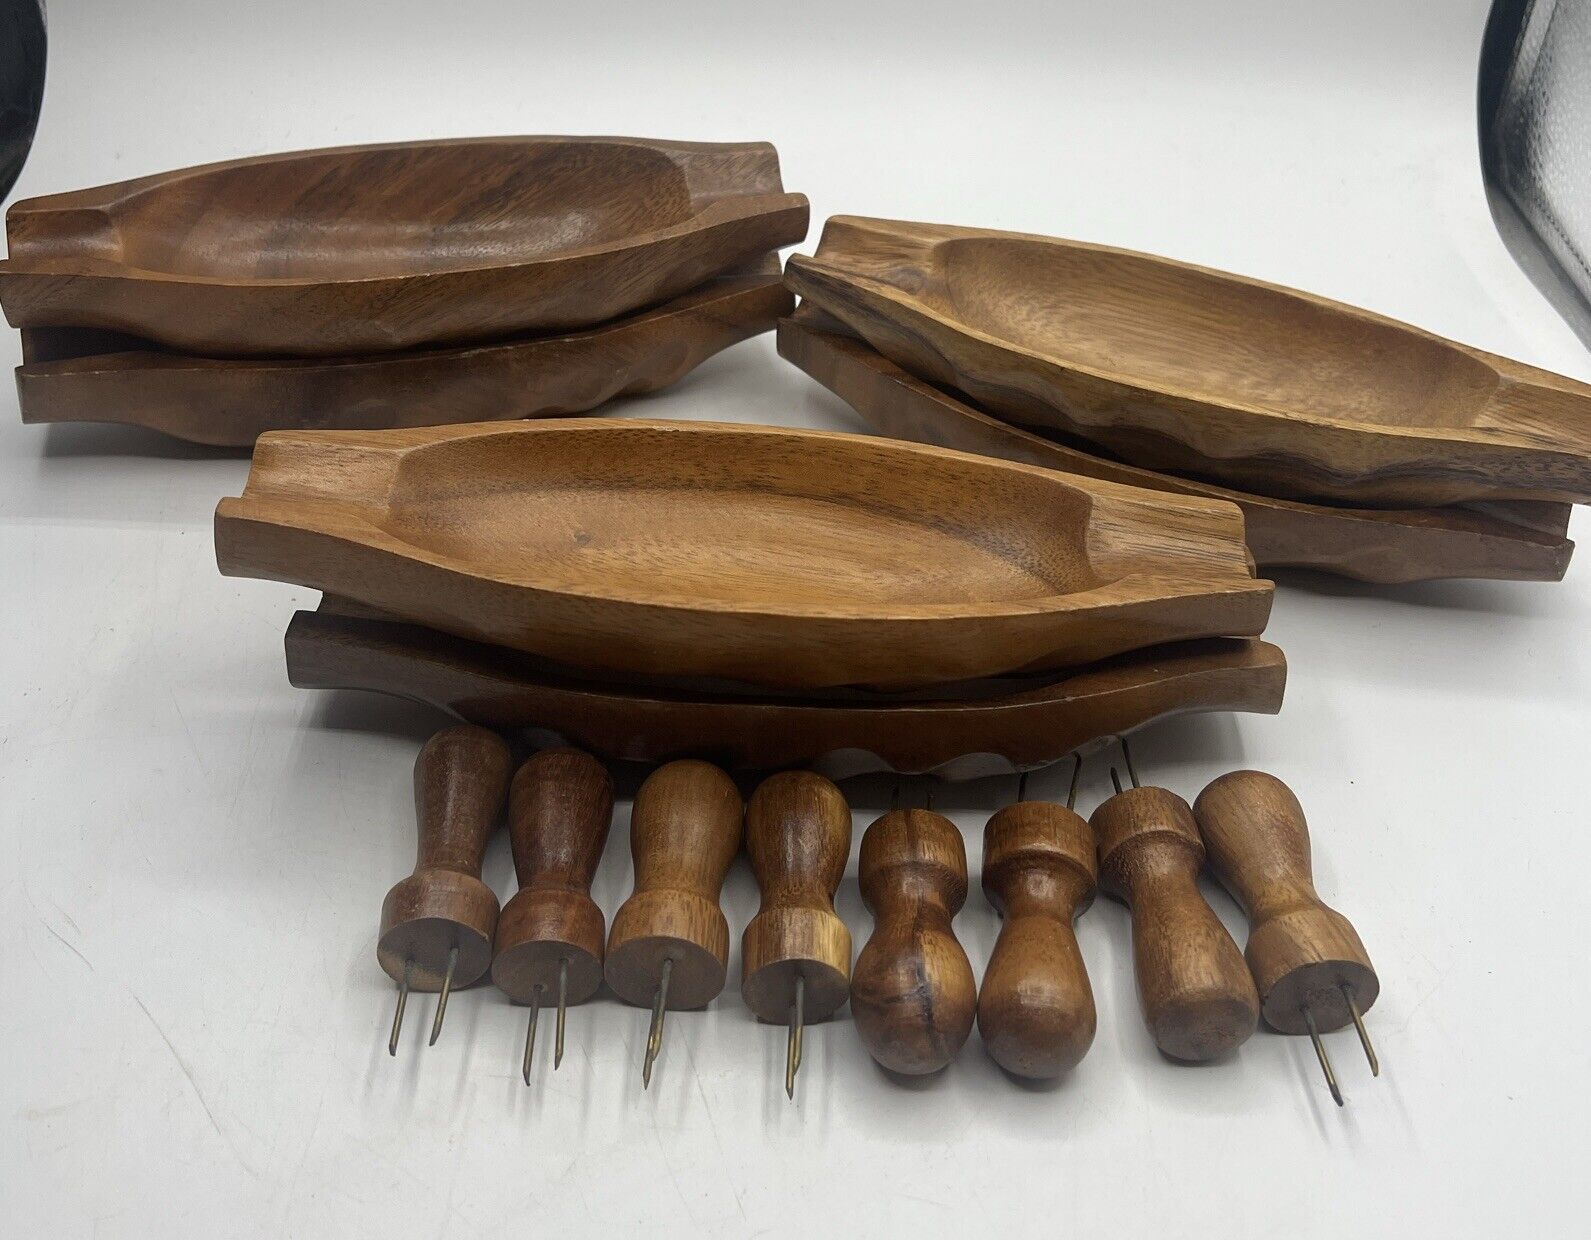 6 Vintage Wooden Corn On Cob Dishes Plates Holder Forks Handles 9